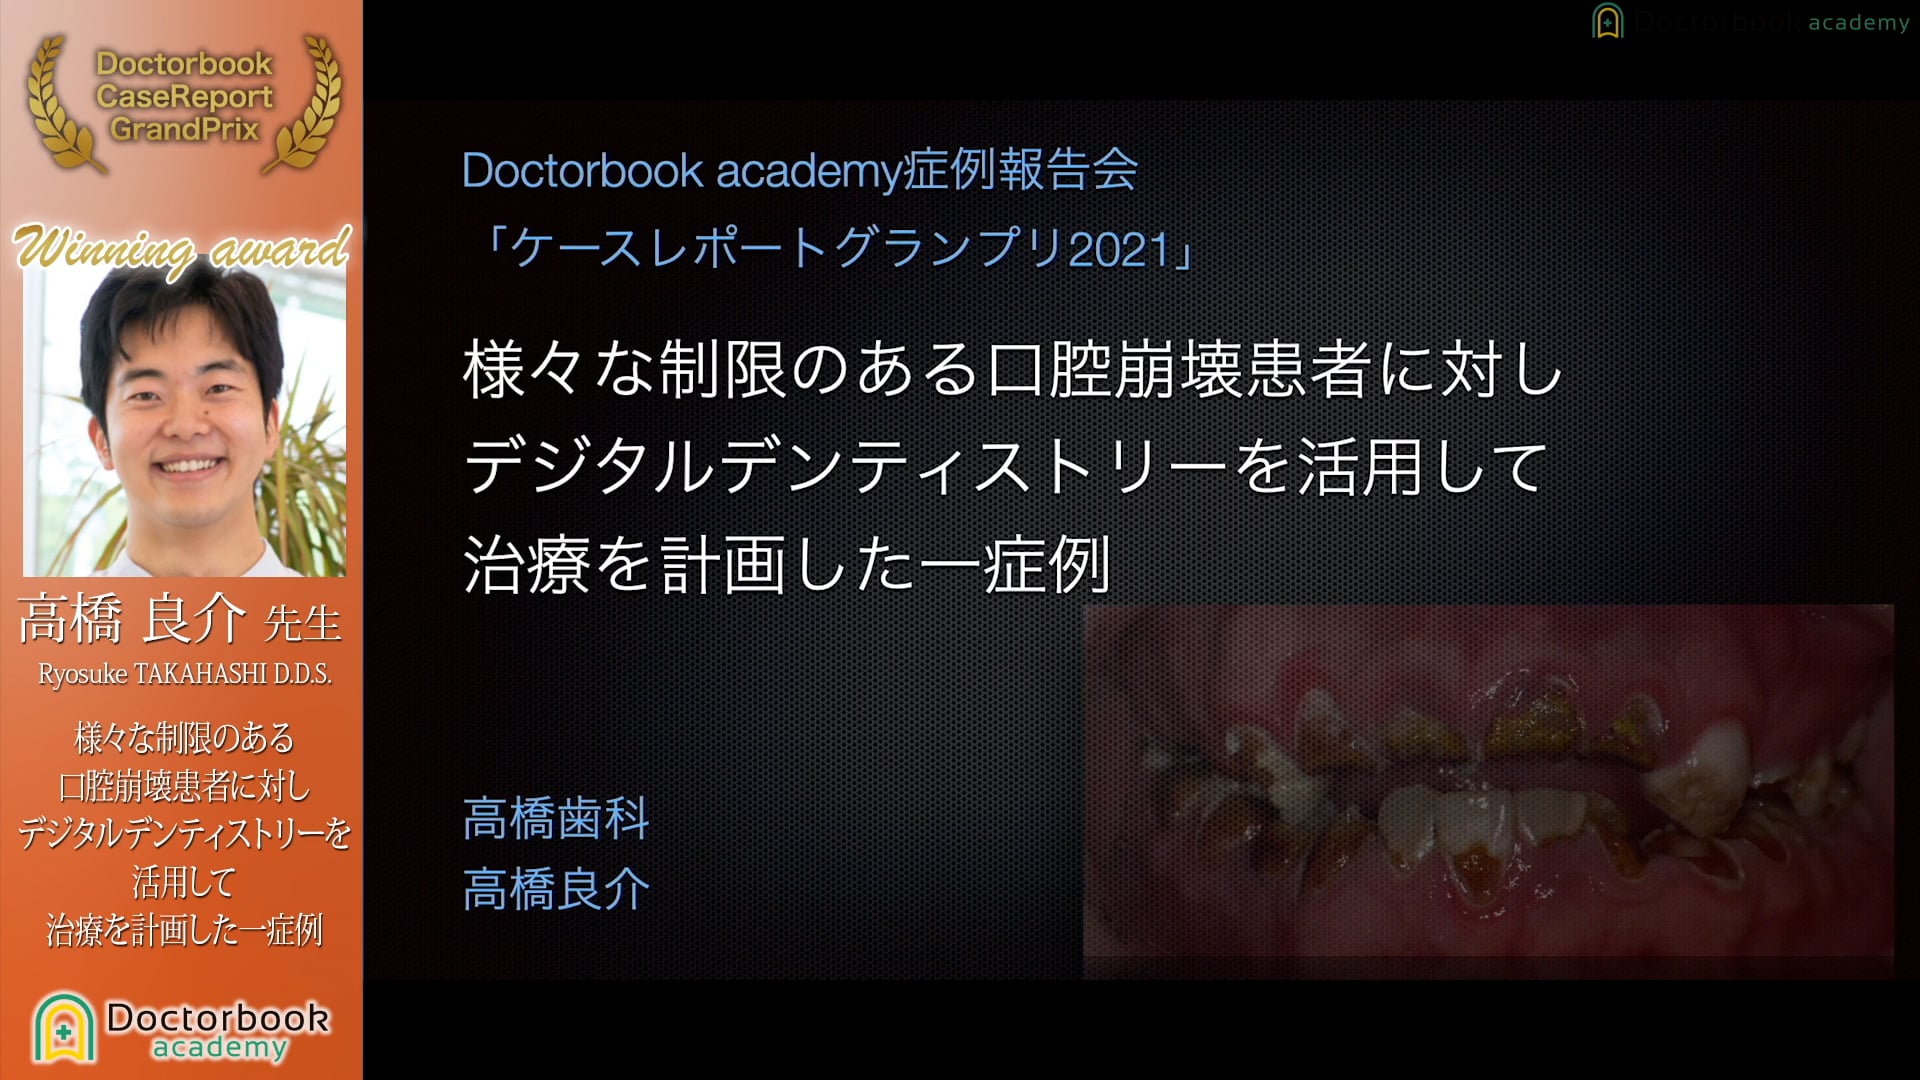 【第5回 ケースレポートGP全顎治療セッション 上位入賞】No.3 高橋良介先生「様々な制限のある口腔崩壊患者に対しデジタルデンティストリーを活用して治療を計画した一症例」